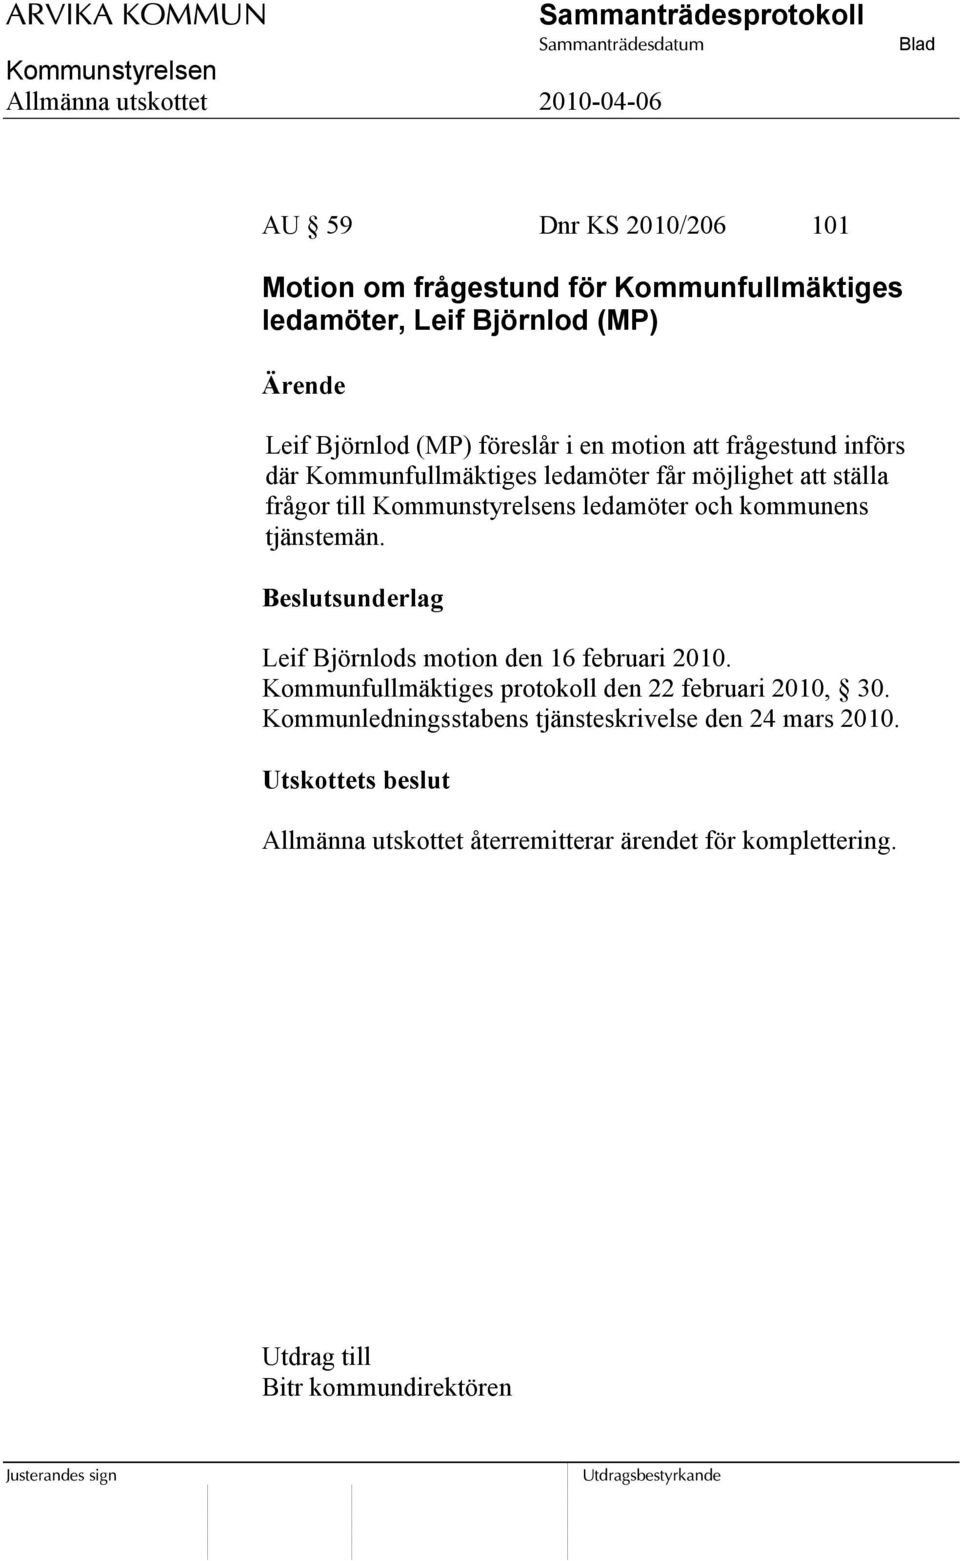 tjänstemän. Leif Björnlods motion den 16 februari 2010. Kommunfullmäktiges protokoll den 22 februari 2010, 30.